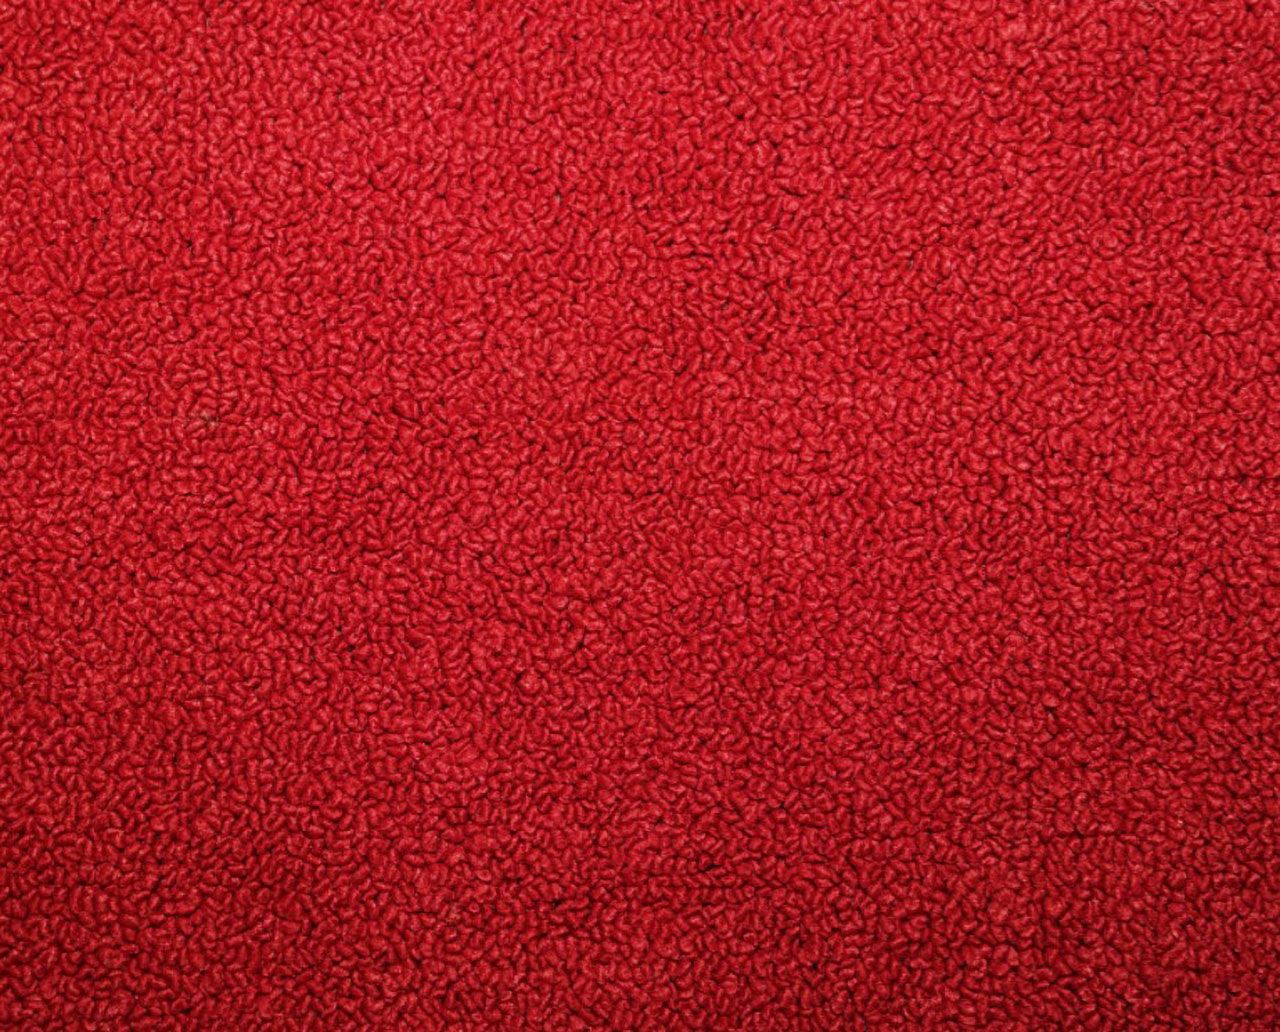 Holden Standard HR Standard Sedan E43 Mephisto Red Carpet (Image 1 of 1)